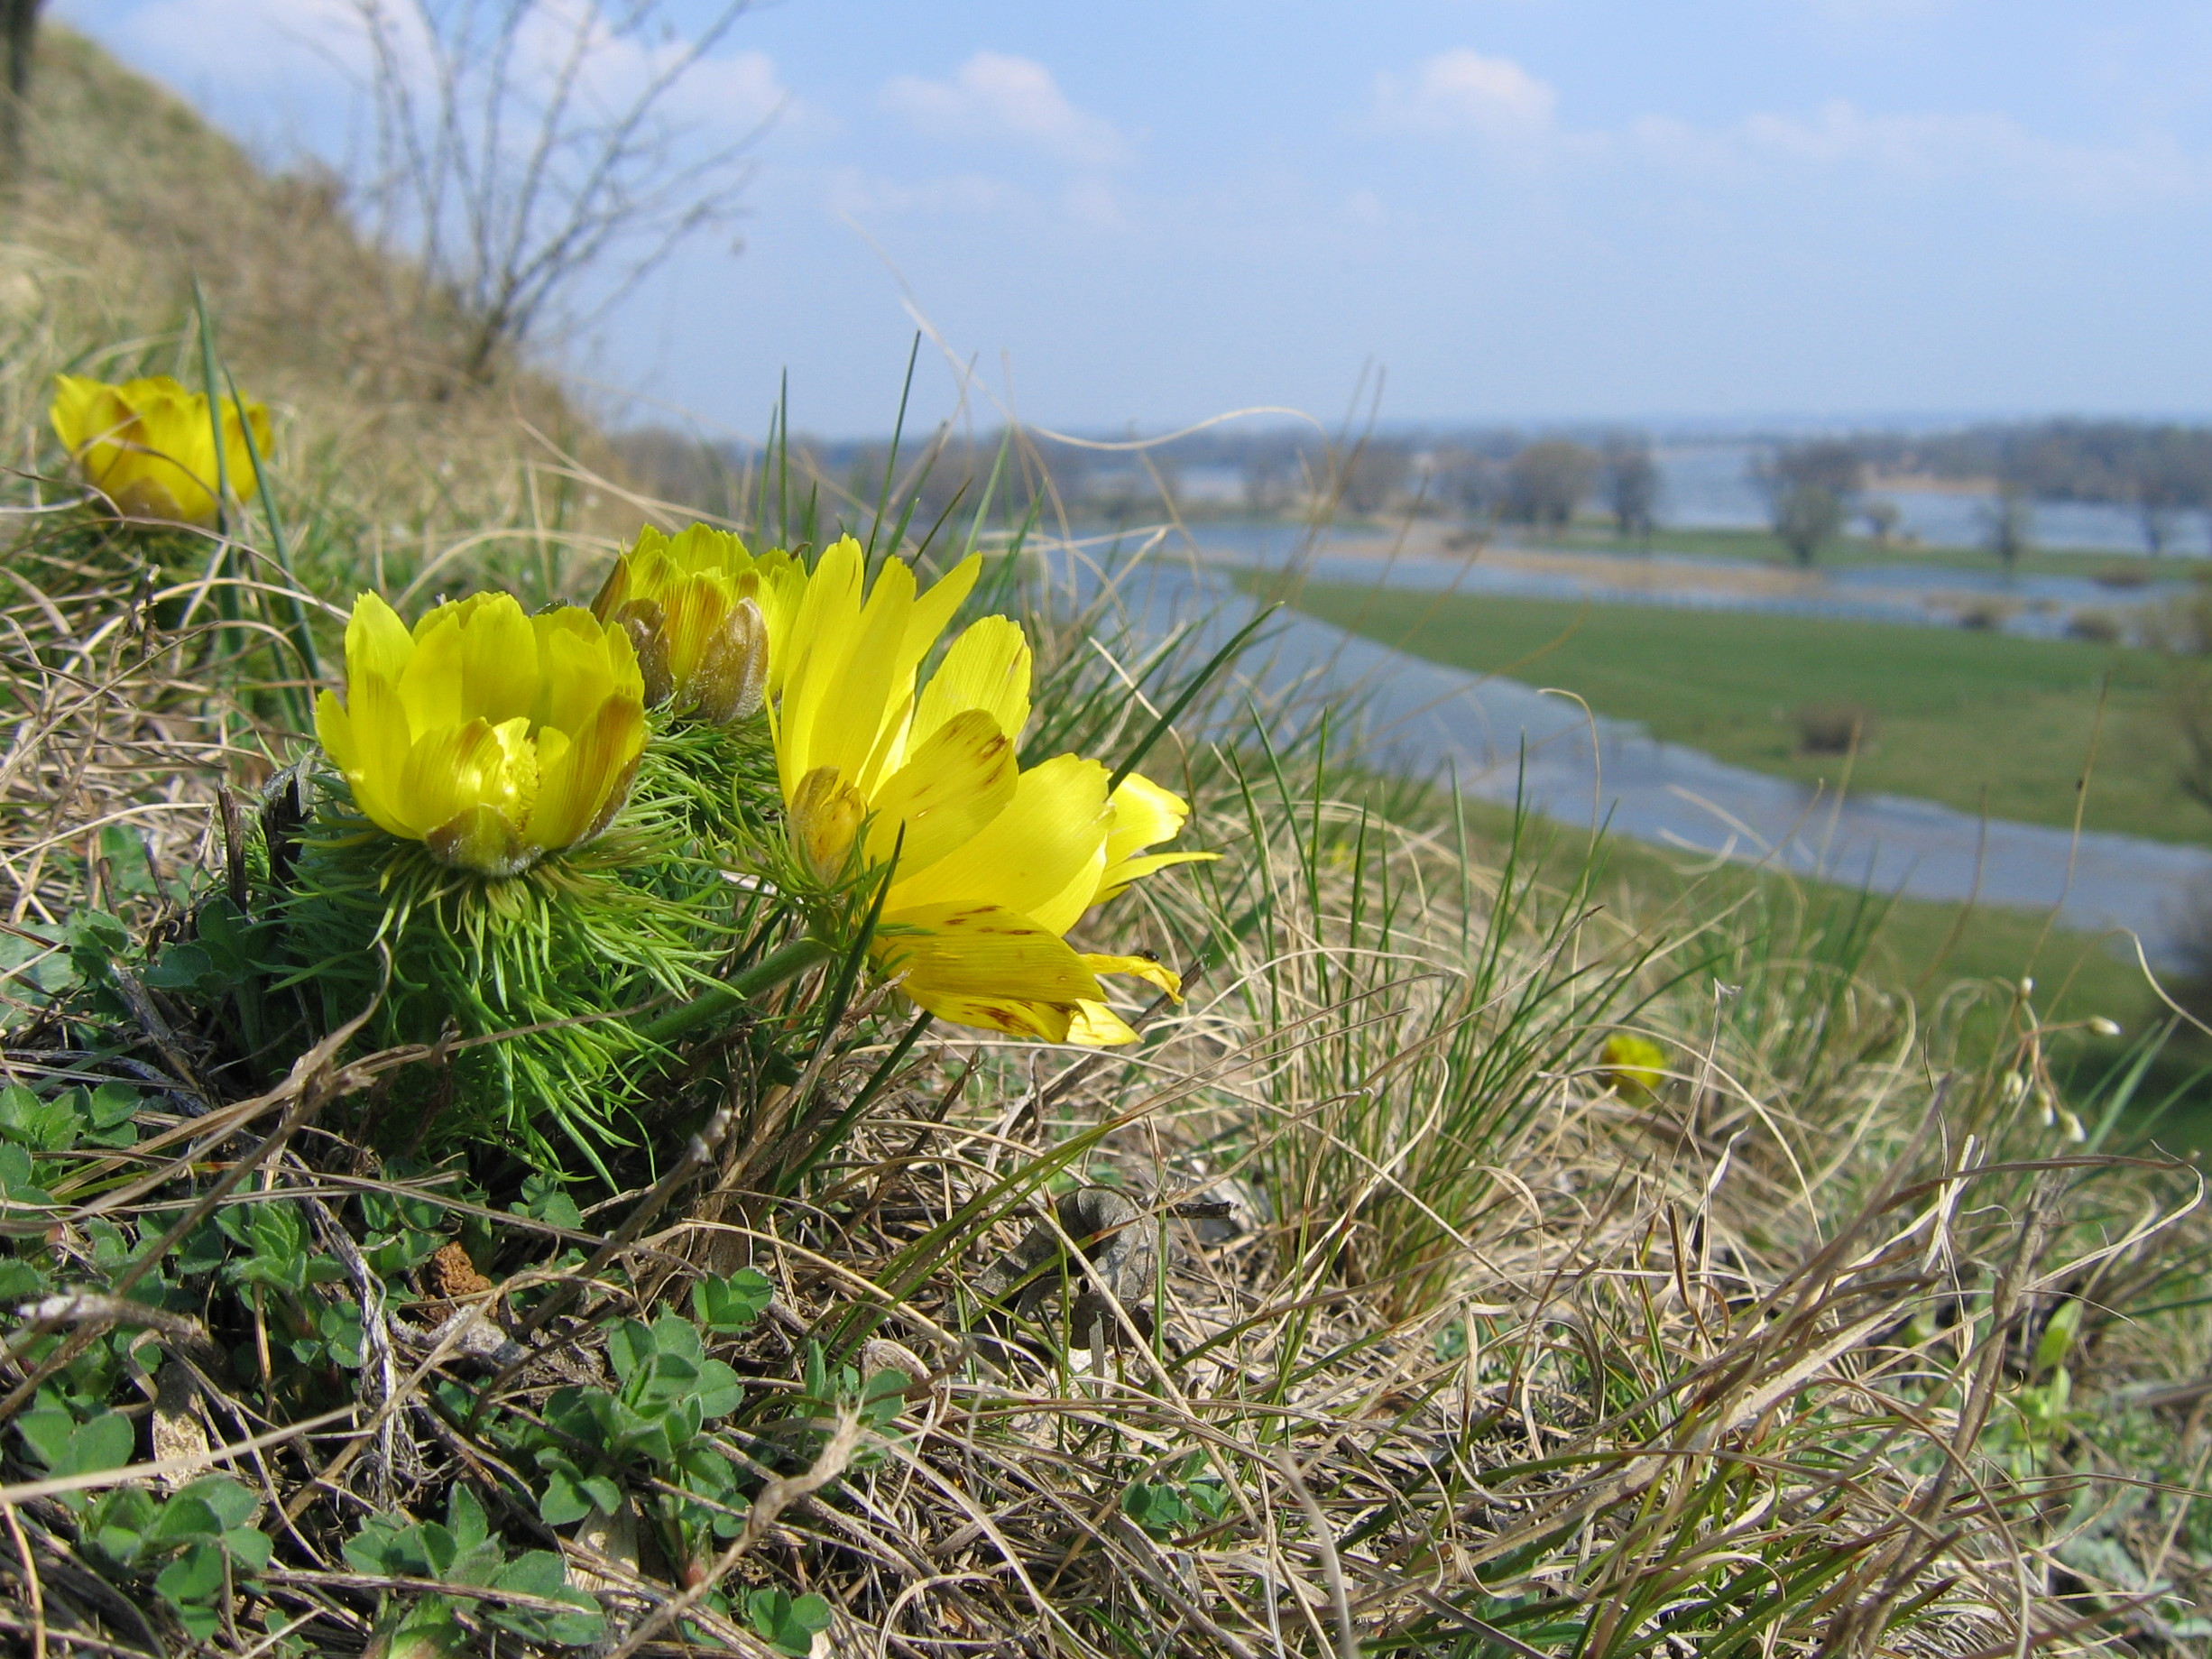 Nahaufnahme eines gelb blühenden Adonisröschens an den Oderhängen bei Lebus im Frühling. Im Bildhintergrund  ist die Oderaue mit Feuchtwiesen, dem Oderstrom, Altarmen und Baumreihen zu erkennen.